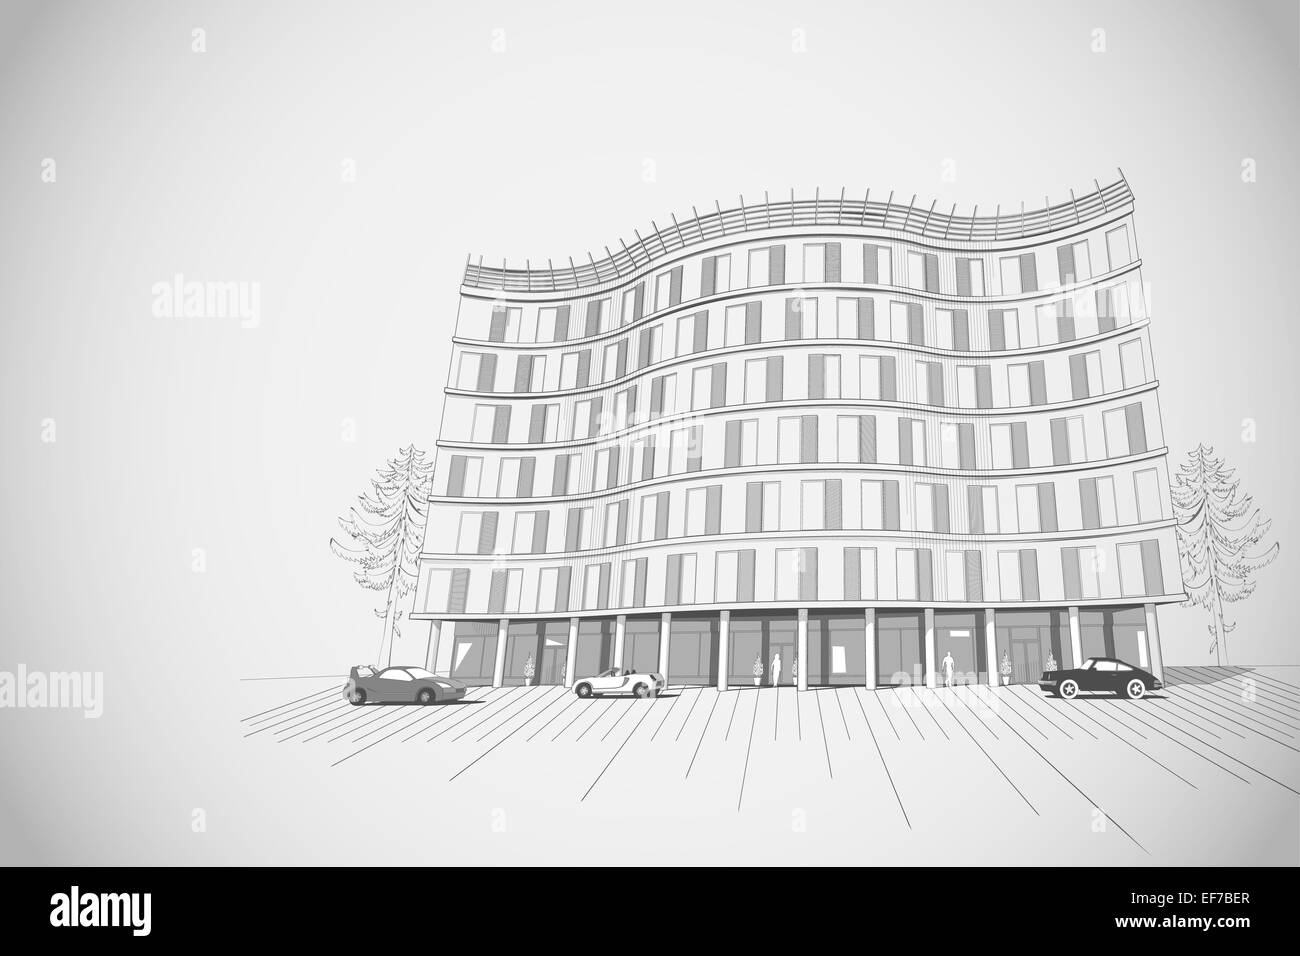 Architecture vecteur fond monochrome gris avec appartement moderne ou bureau immeuble de plusieurs étages Illustration de Vecteur